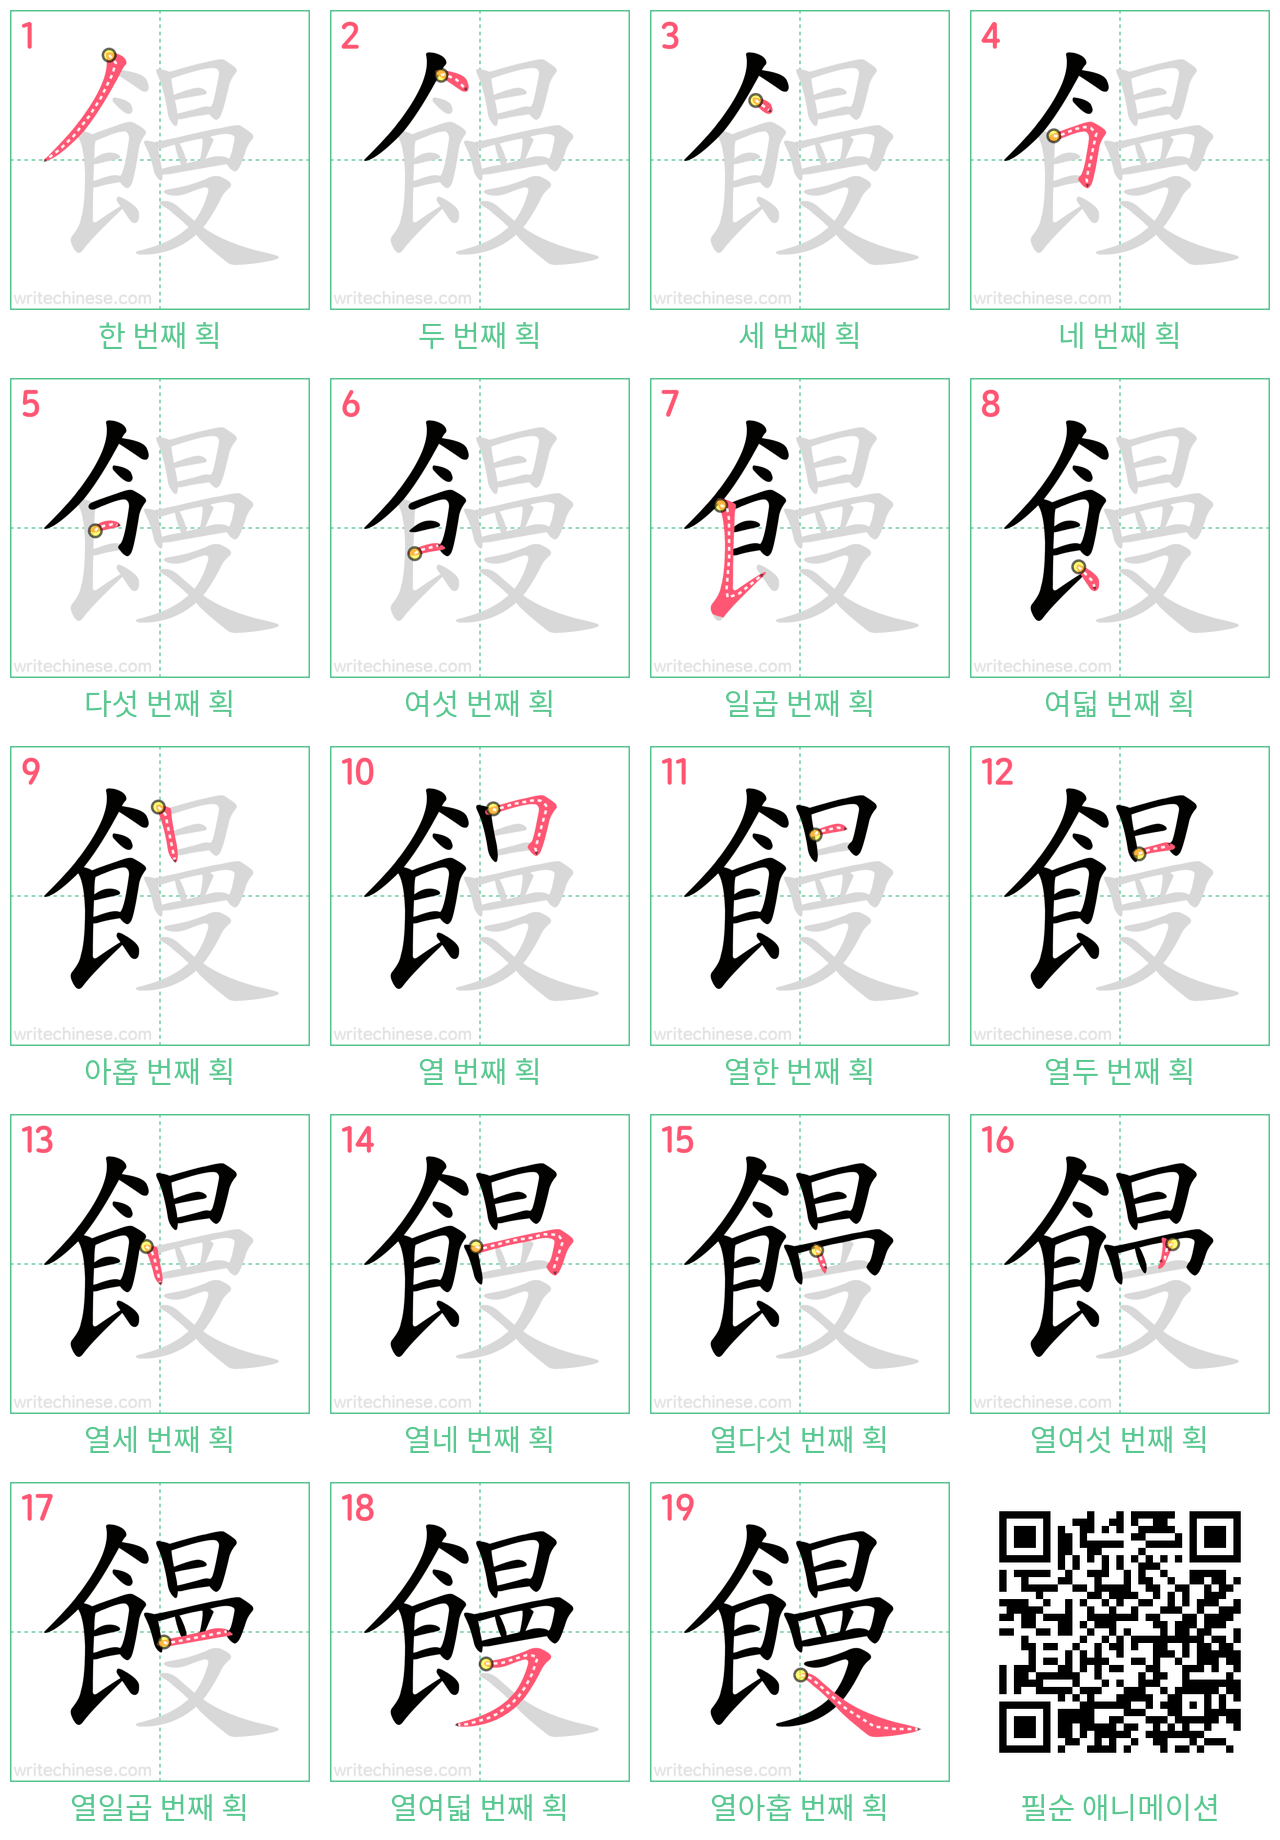 饅 step-by-step stroke order diagrams